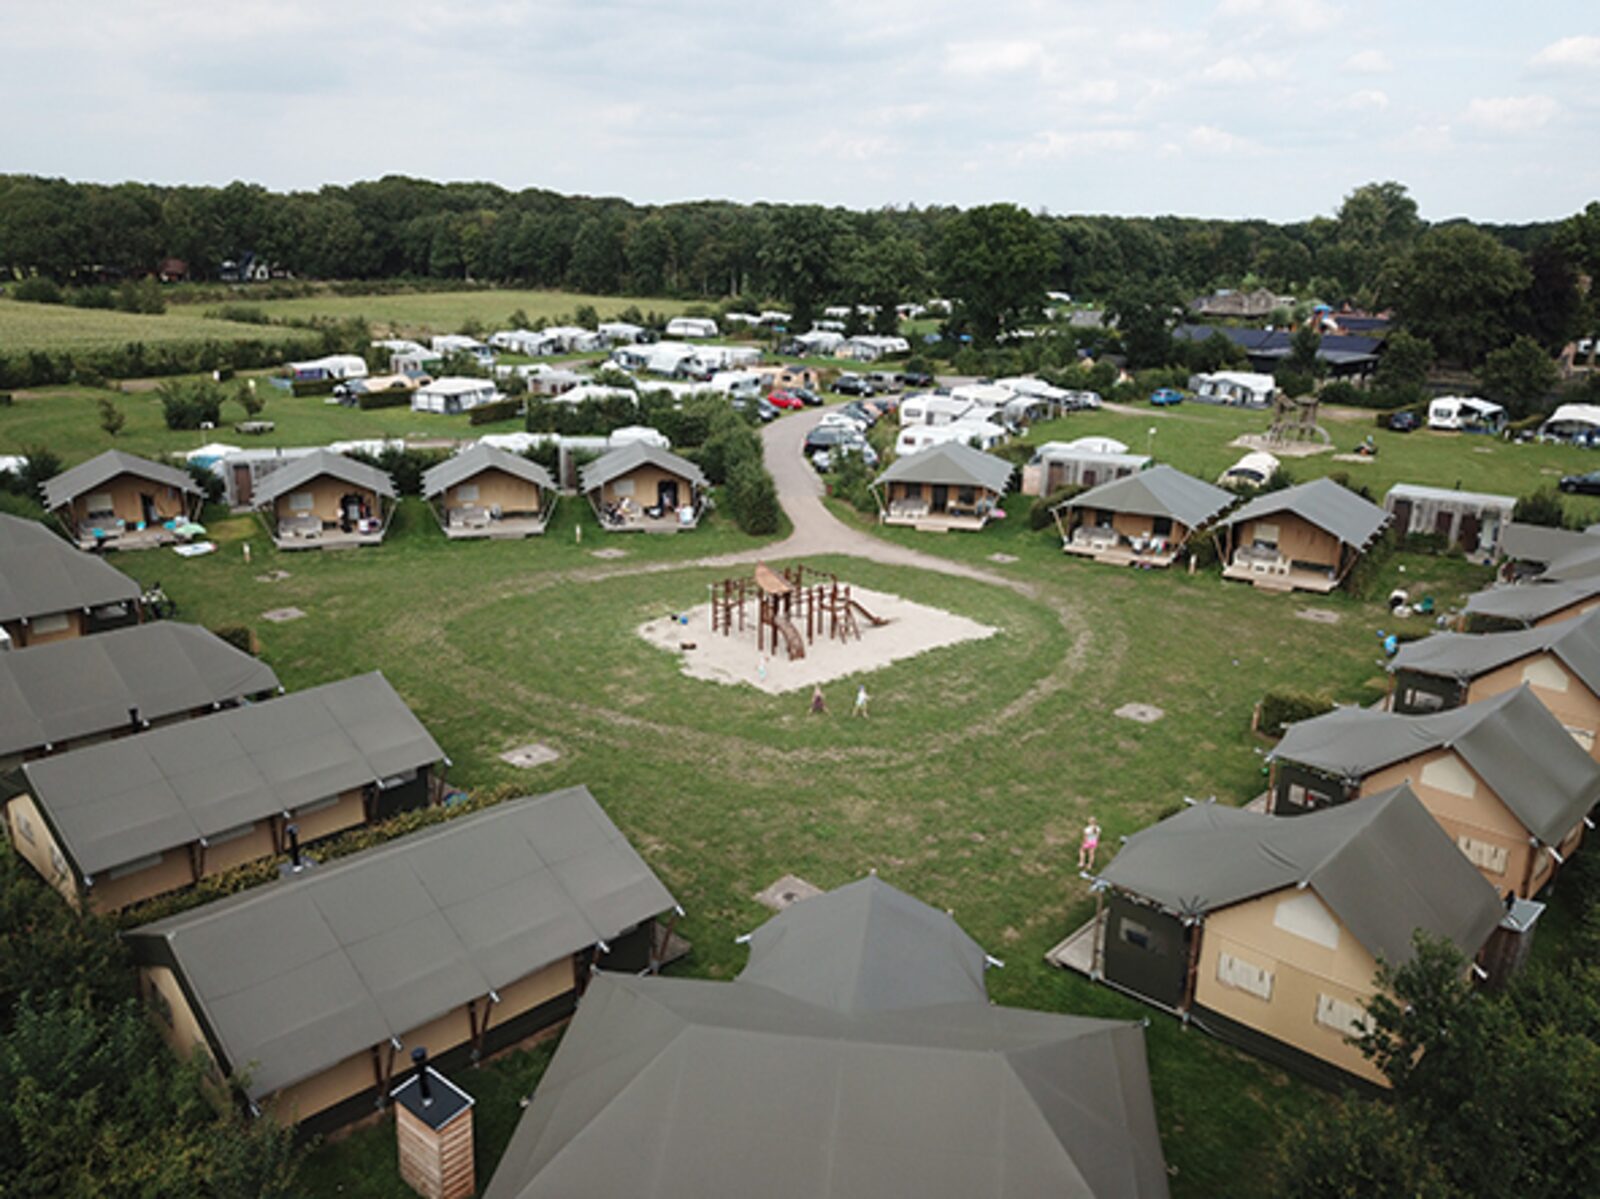 Safari tent, 6-person